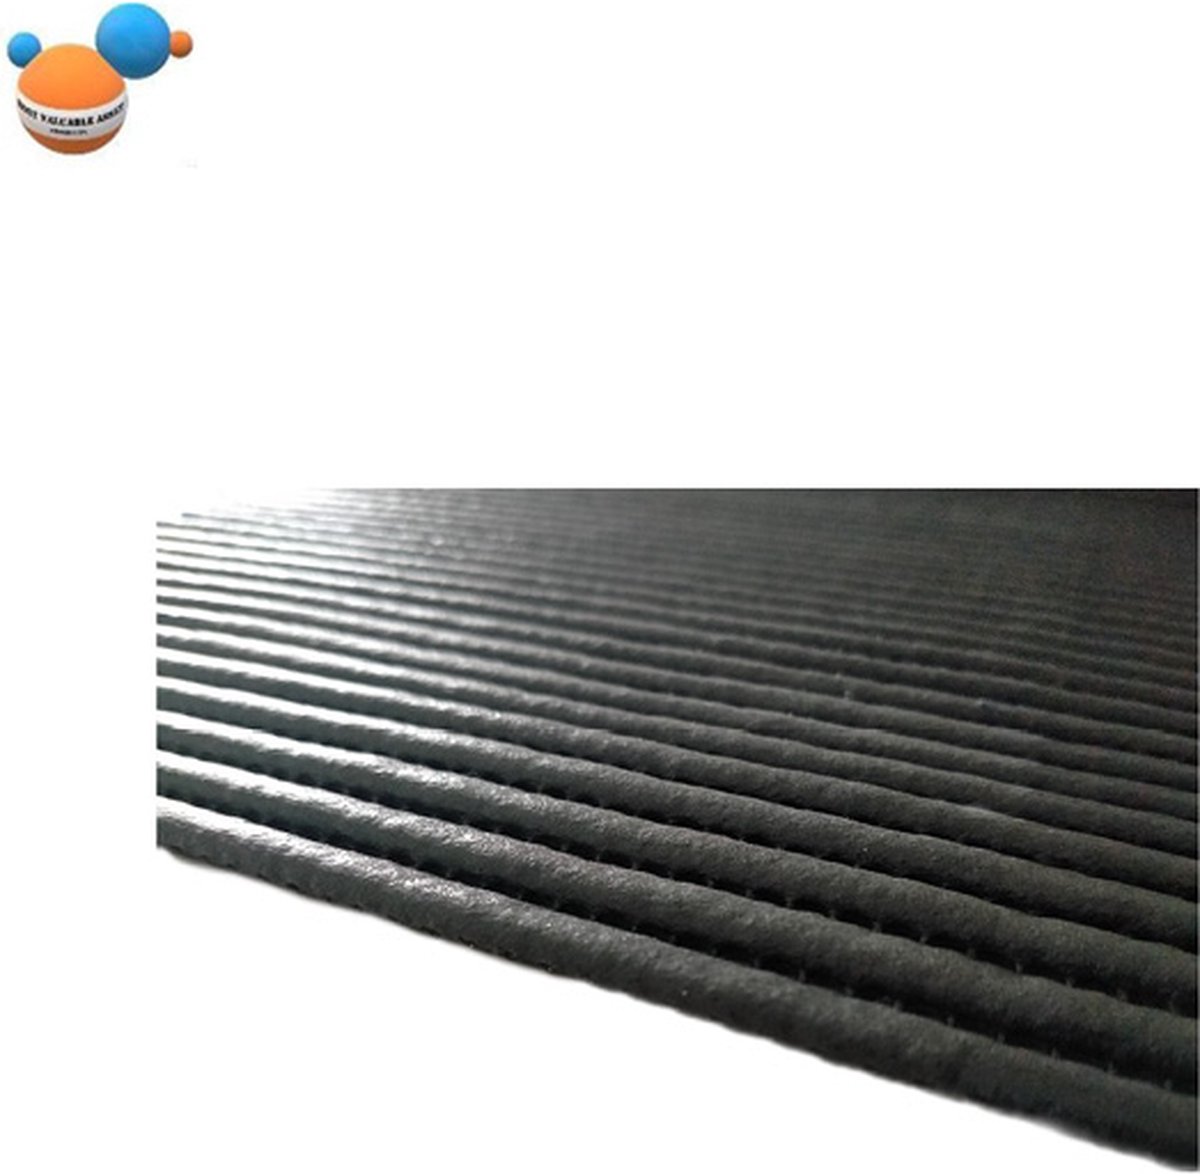 Anti slip mat zwart 65 x 180 cm Premium Dik | Anti slip mat | Most Valuable Asset products | Rubber mat zwart | Ideaal voor la of lade, onder tapijt of badmat, vloer, of dienblad | Grip mat tegen schuiven en bewegen